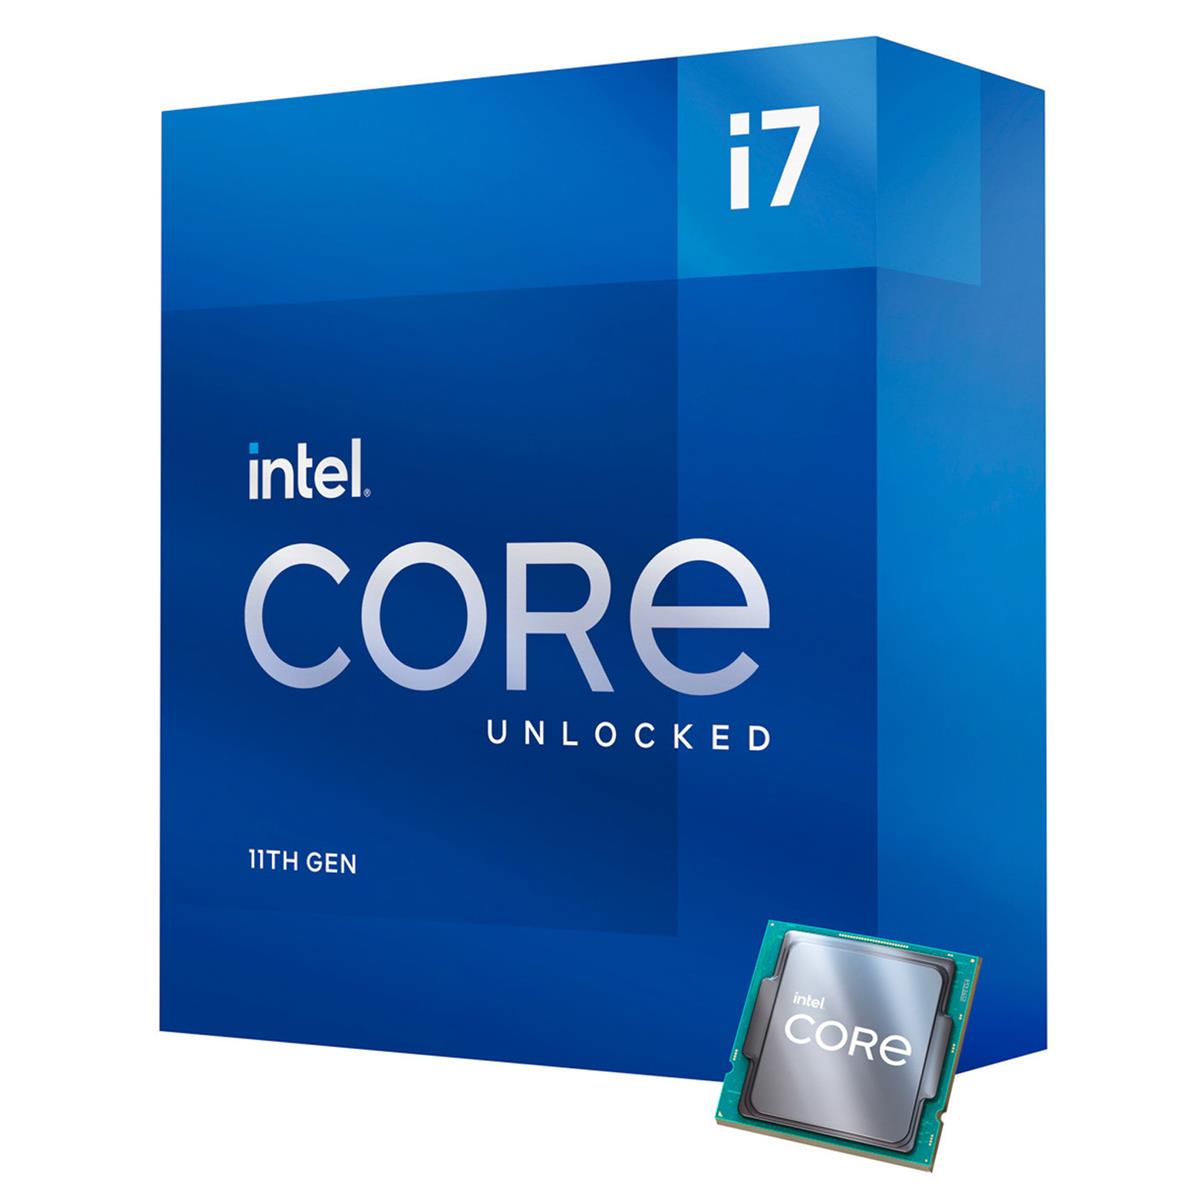 Image of Intel Core i7-11700K 3.6GHz 8-Core Unlocked Desktop Processor